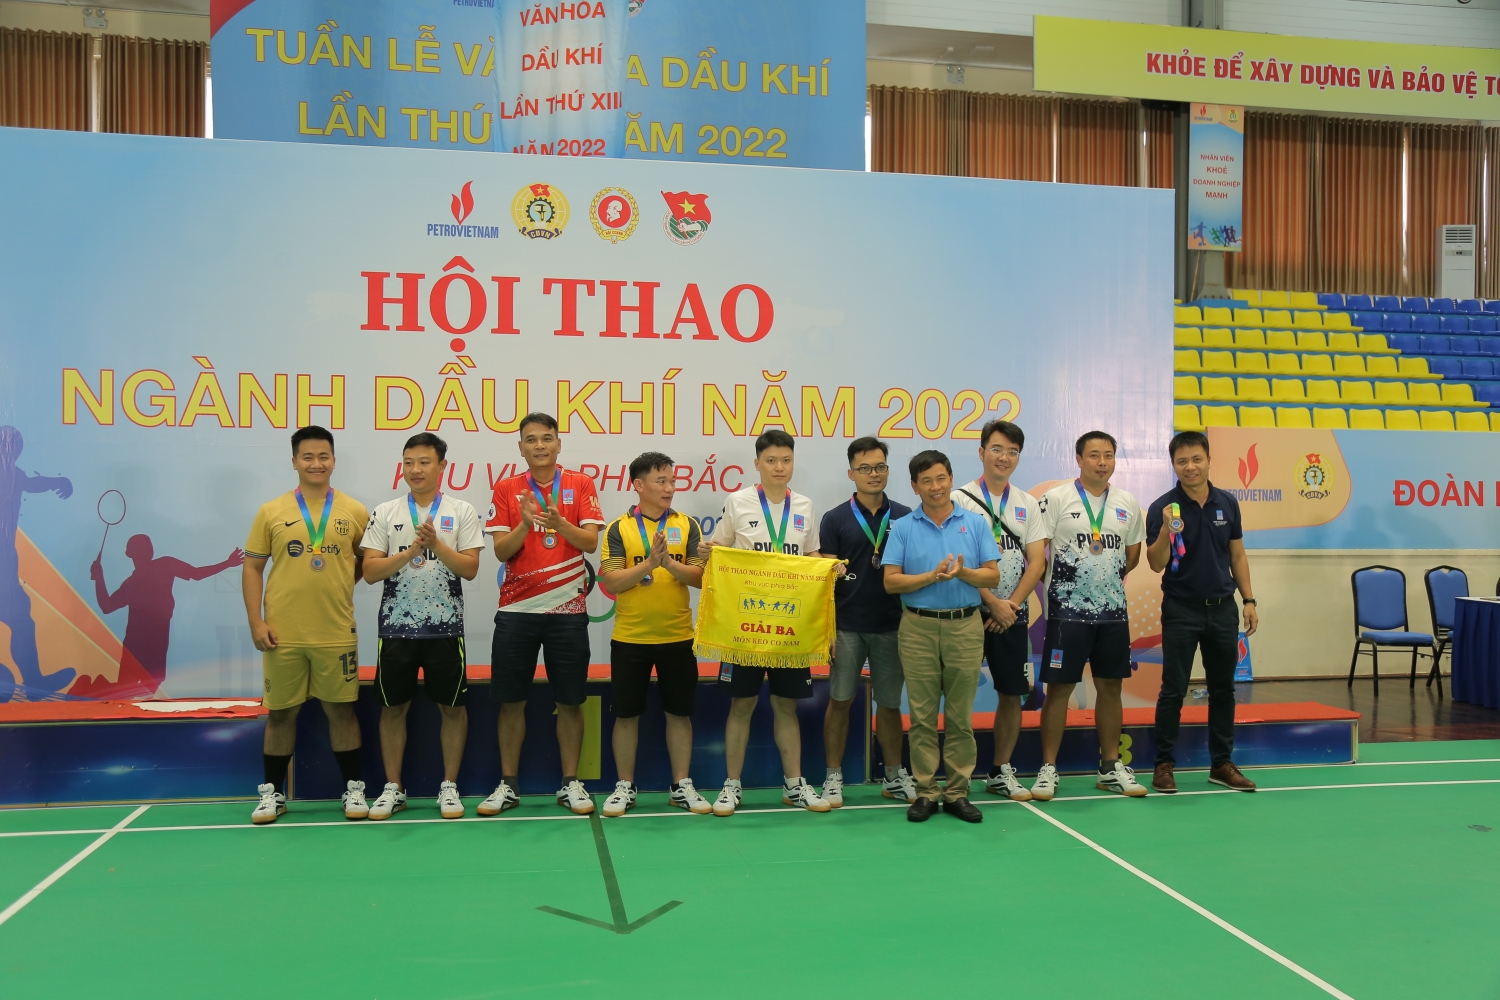 Đội PVFCCo giành chức vô địch ở các nội dung thi đấu đồng đội môn nhảy bao bố và kéo co